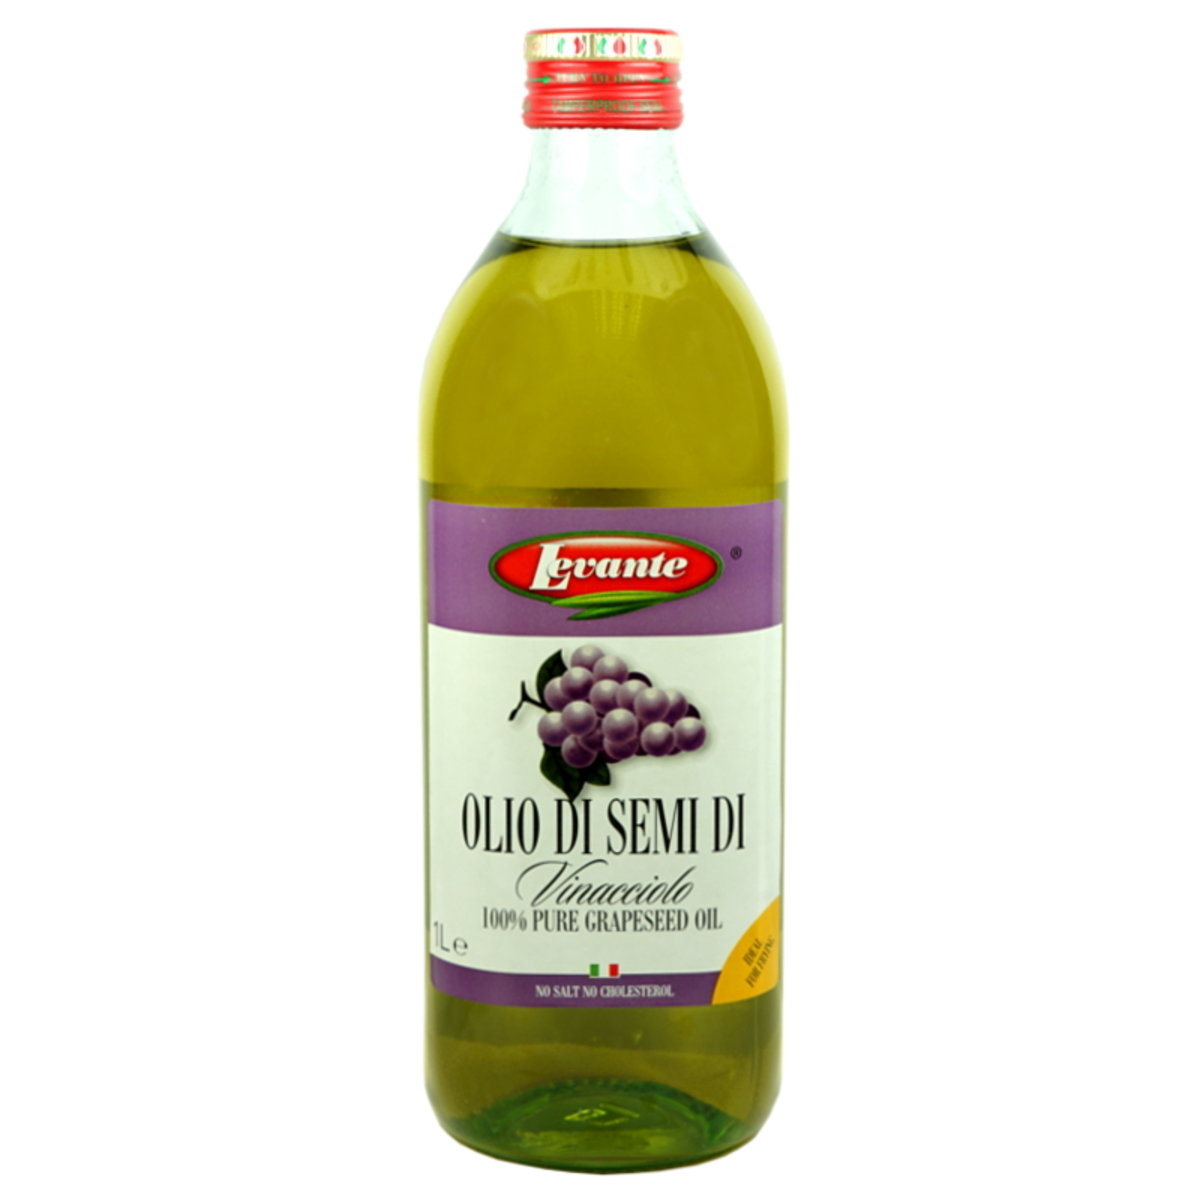 Levante grape seed oil 1L